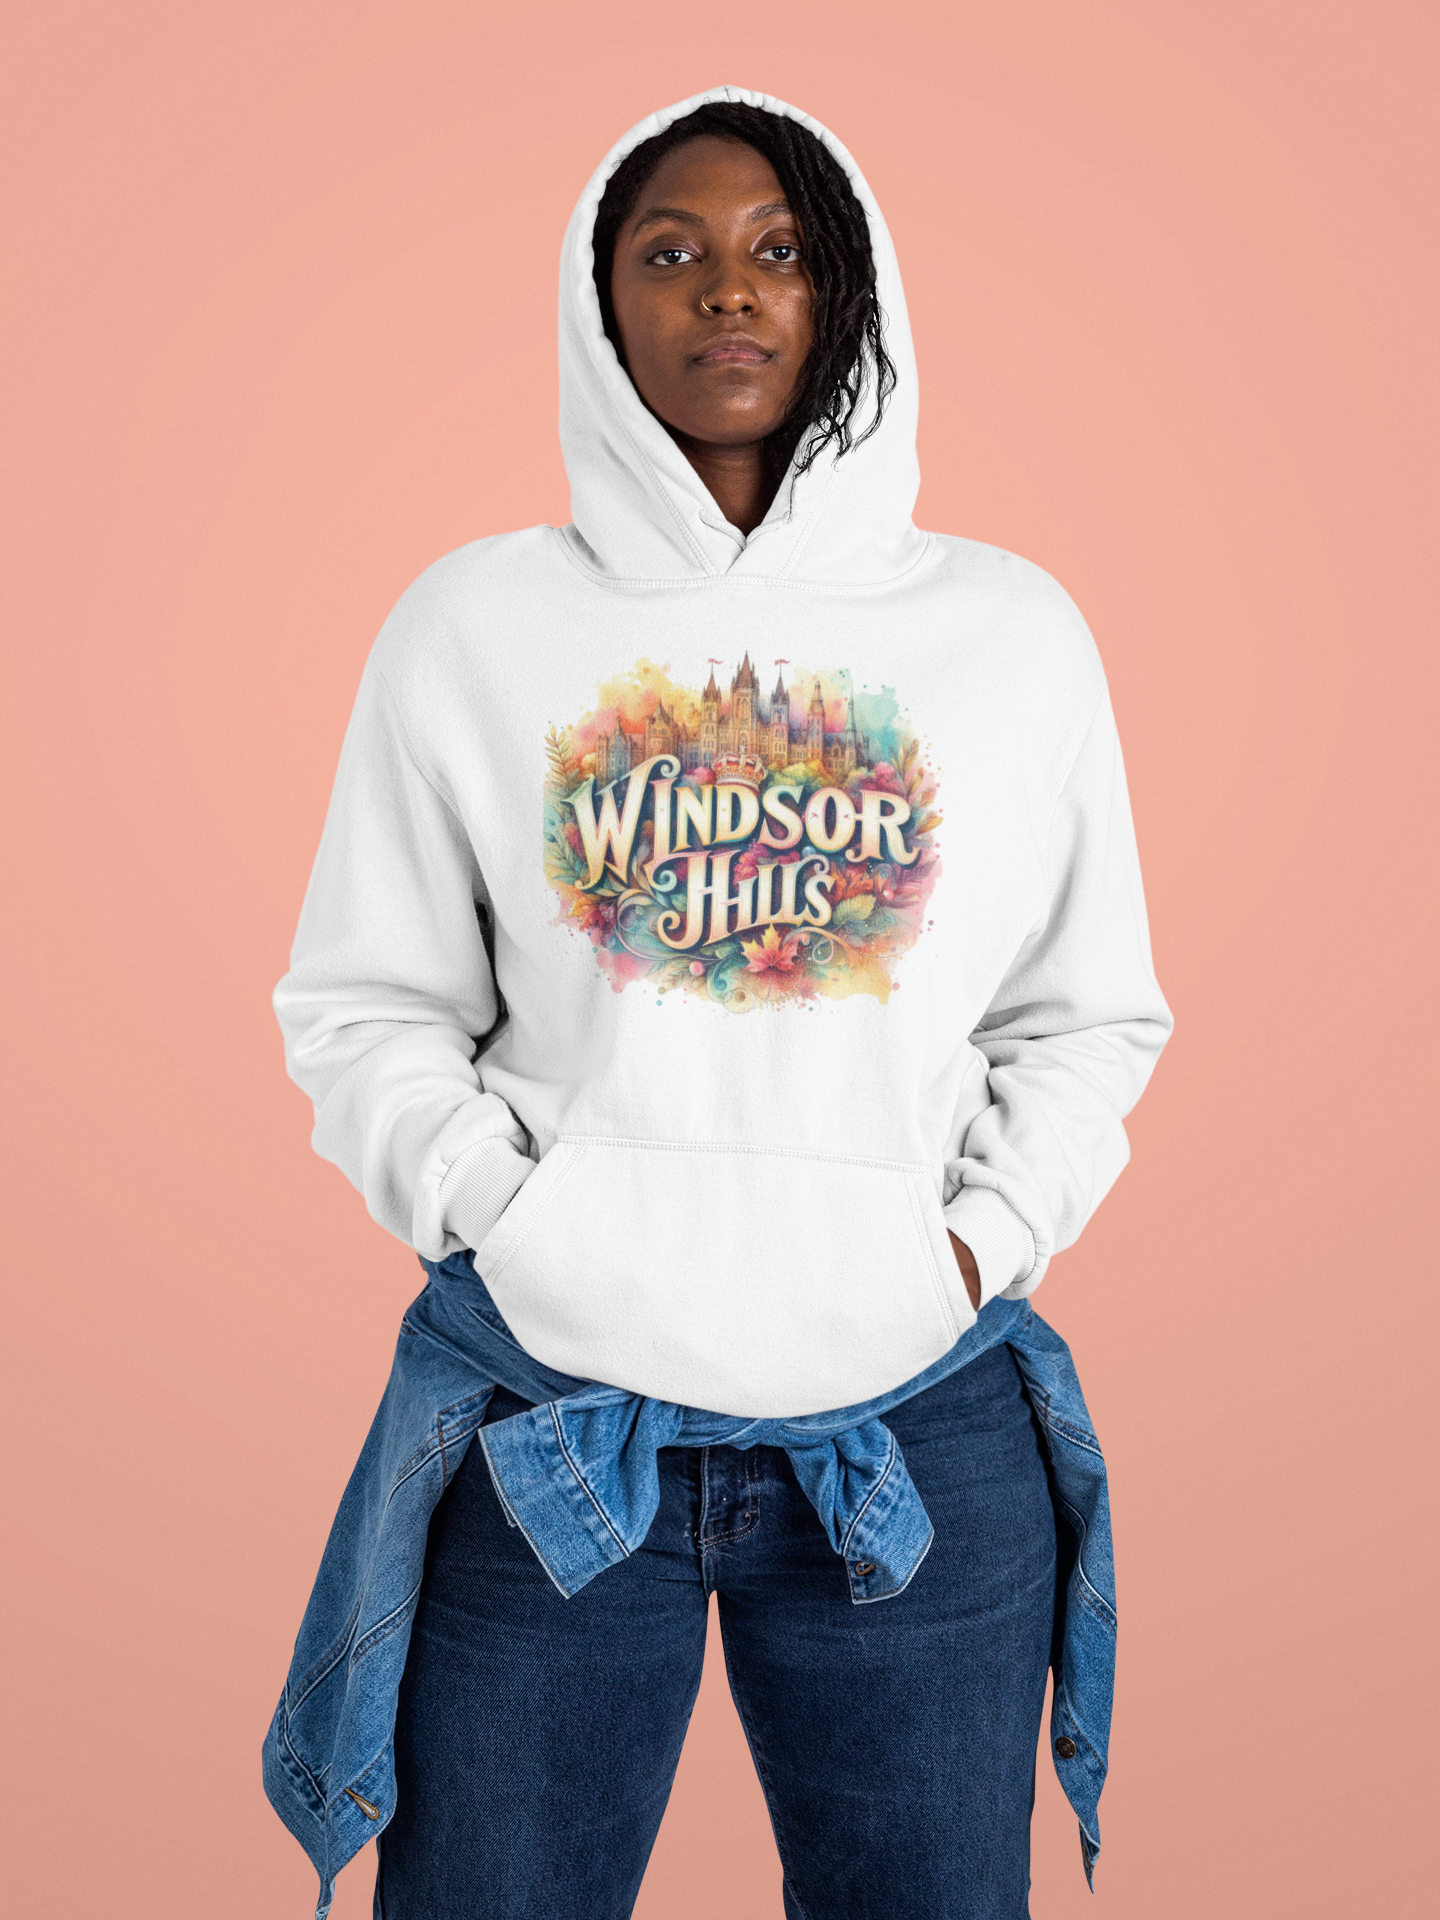 WINDSOR HILLS ONE Hooded Sweatshirt, Back in the Day, African American Pride, Black History, Historic Black Neighborhood, Graphic Sweatshirt, Urban Streetwear